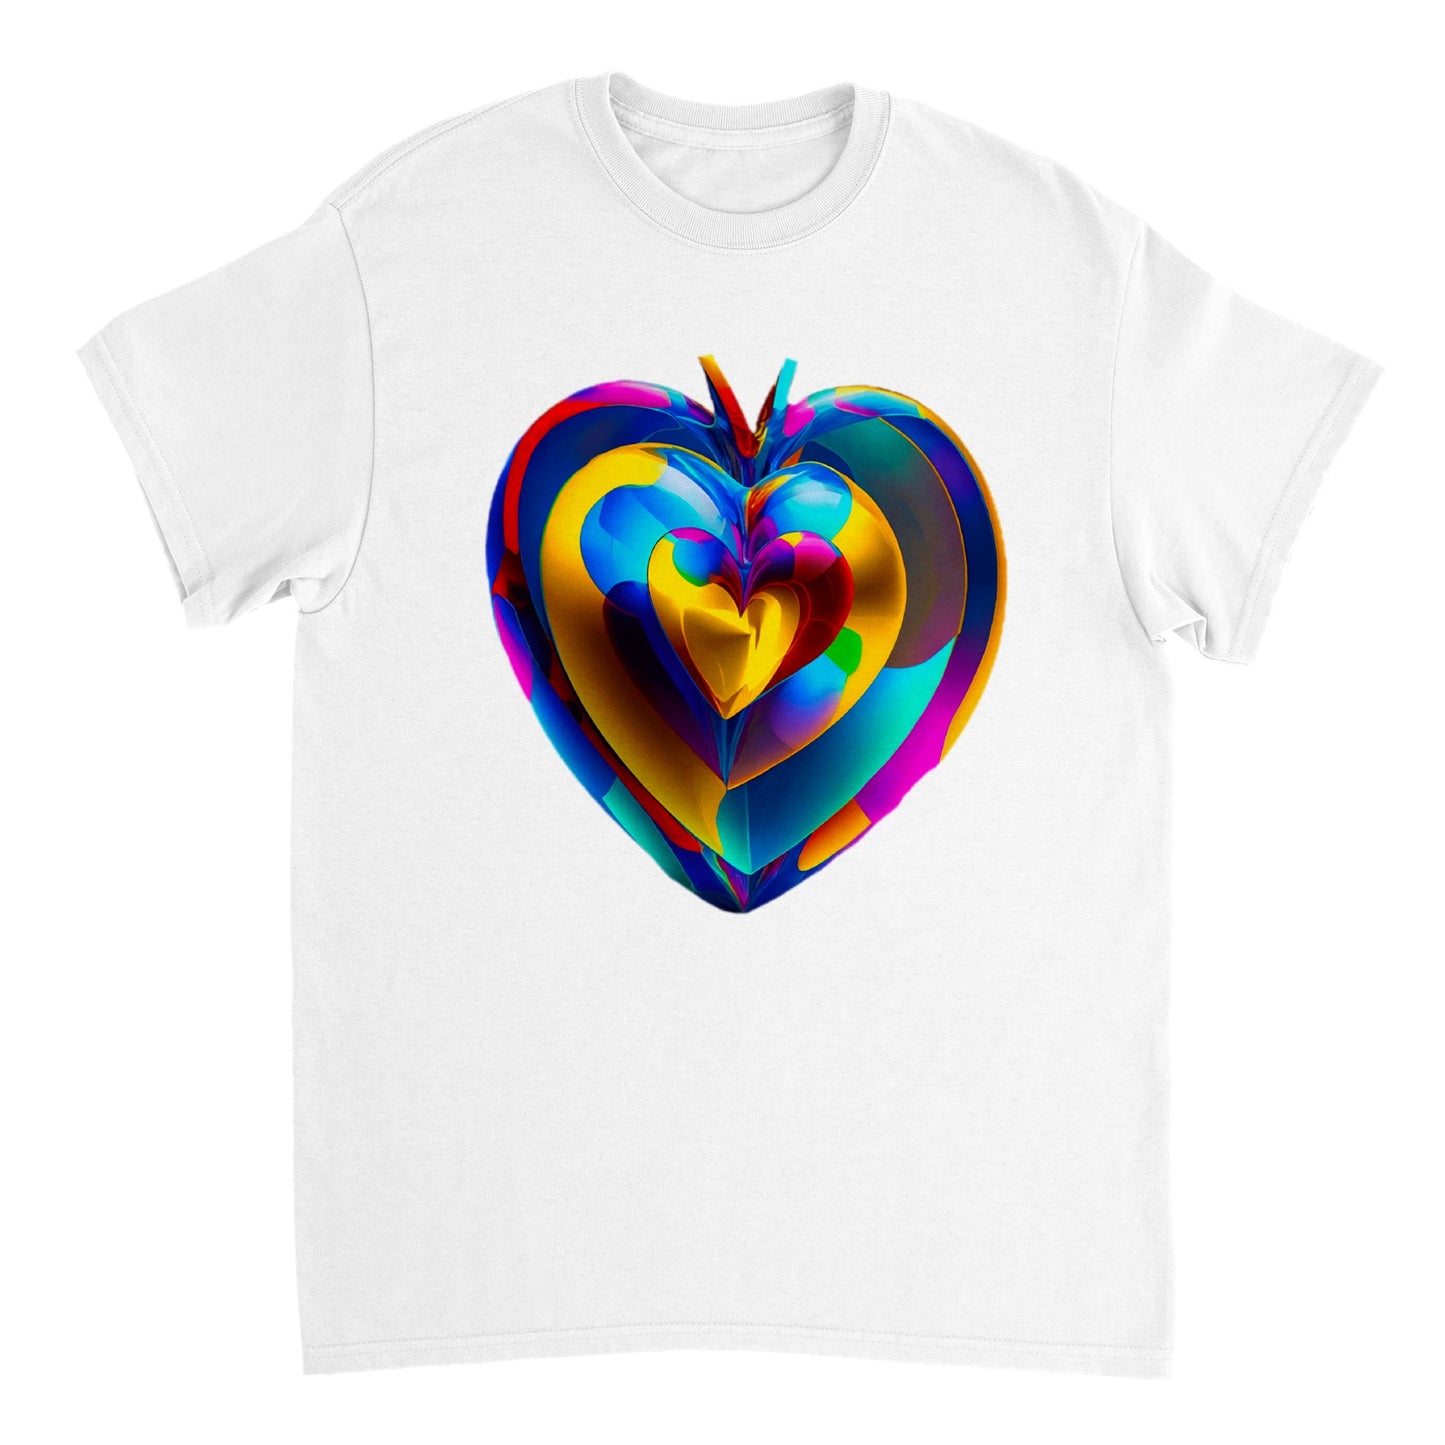 Love Heart - Heavyweight Unisex Crewneck T-shirt 85